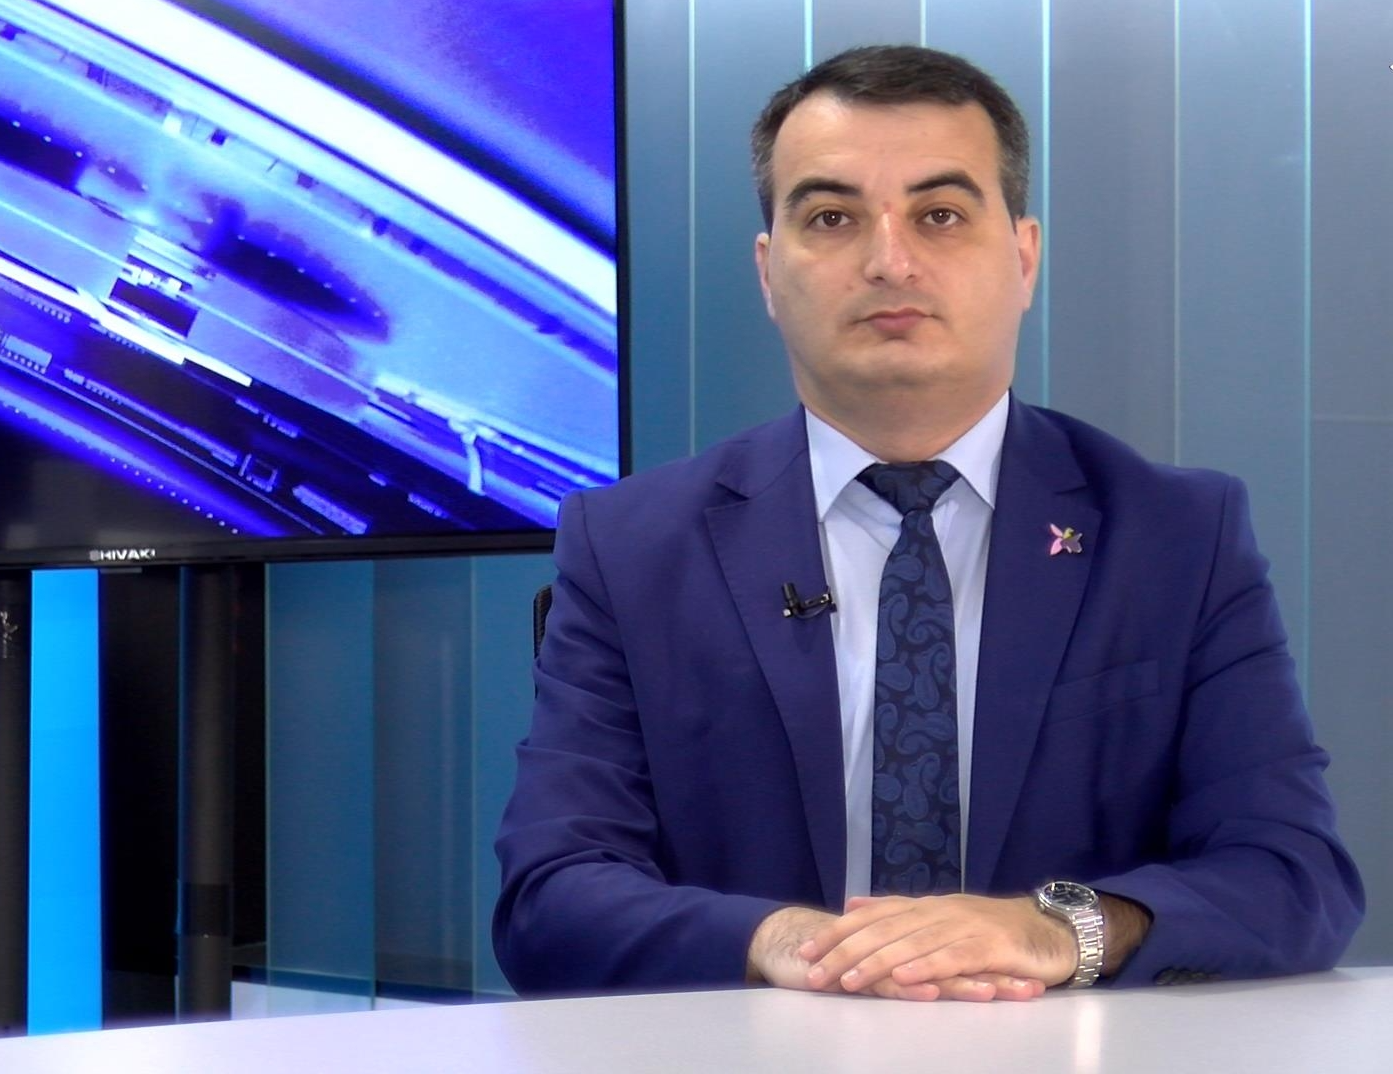 Ermənistanın hərbi-siyasi rəhbərliyi mayın 14-də Brüssel formatında keçirilən görüşü pozmağa çalışır – İlyas Hüseynov (ÖZƏL)